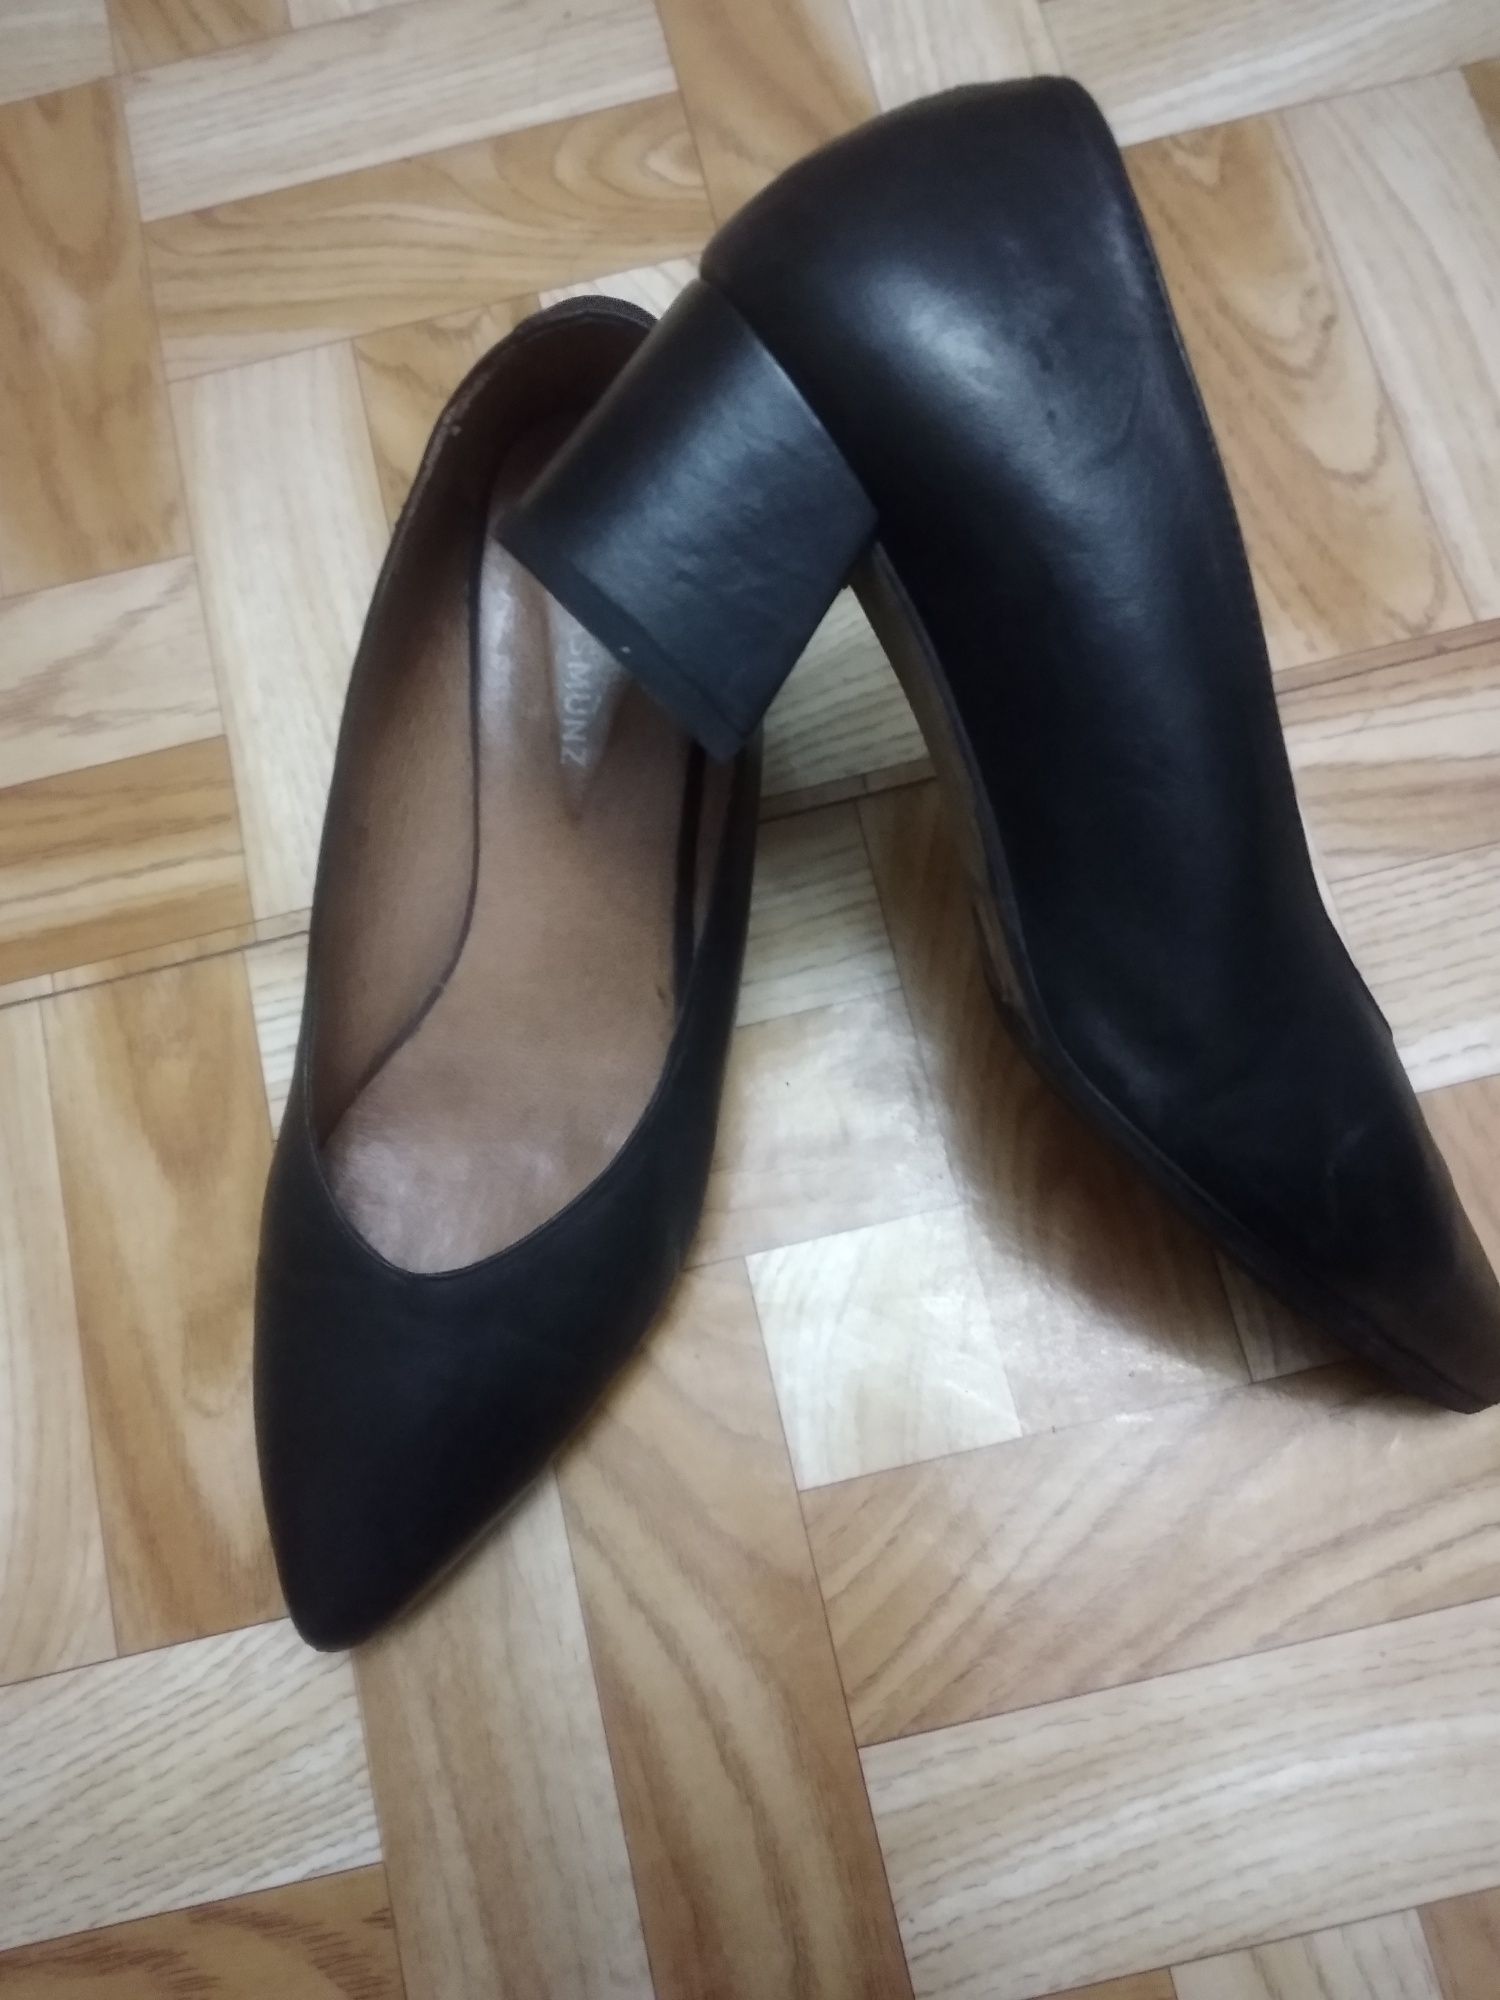 Обувь женская Натуральная кожа Европейский дизайн Покупалась в Москве.